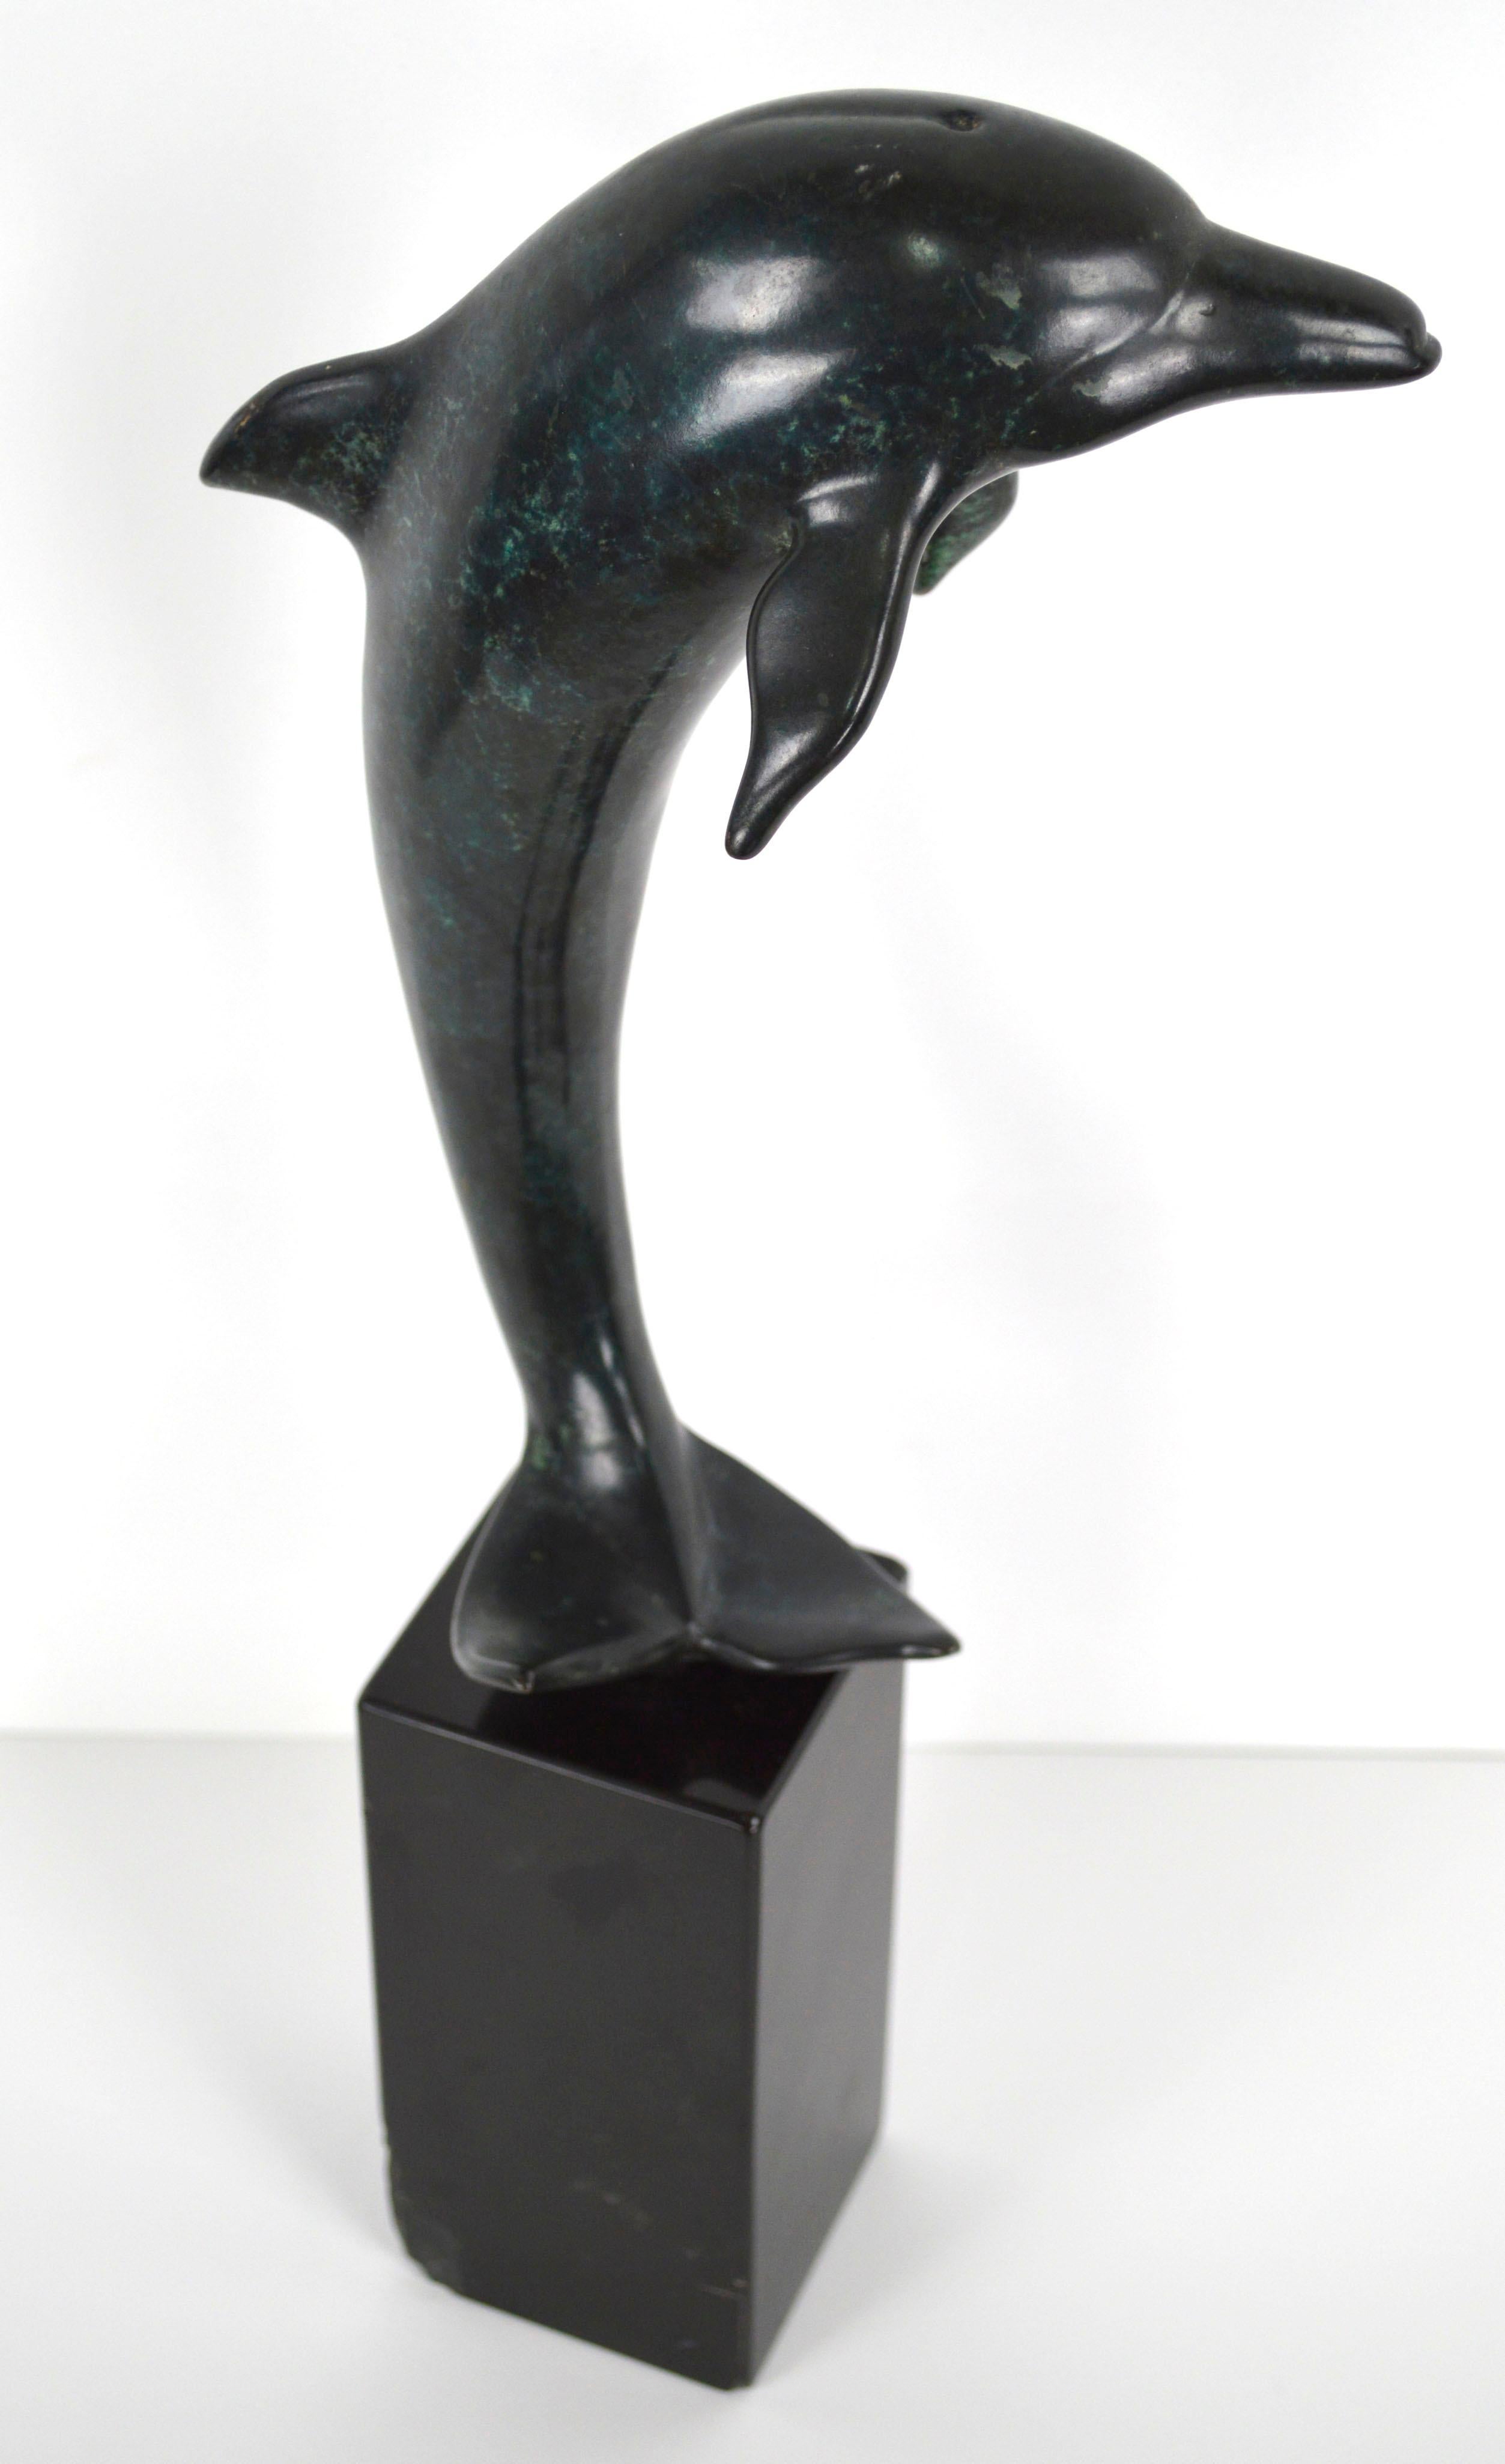 Zeitgenössische Delfin-Skulptur aus patinierter Bronze

Elegante Delphin-Skulptur aus patiniertem Bronzeguss auf Granitsockel des bekannten Bildhauers John Jagger (Amerikaner, gest. 2013). Der Künstler hat auf der Unterseite der Heckflosse die